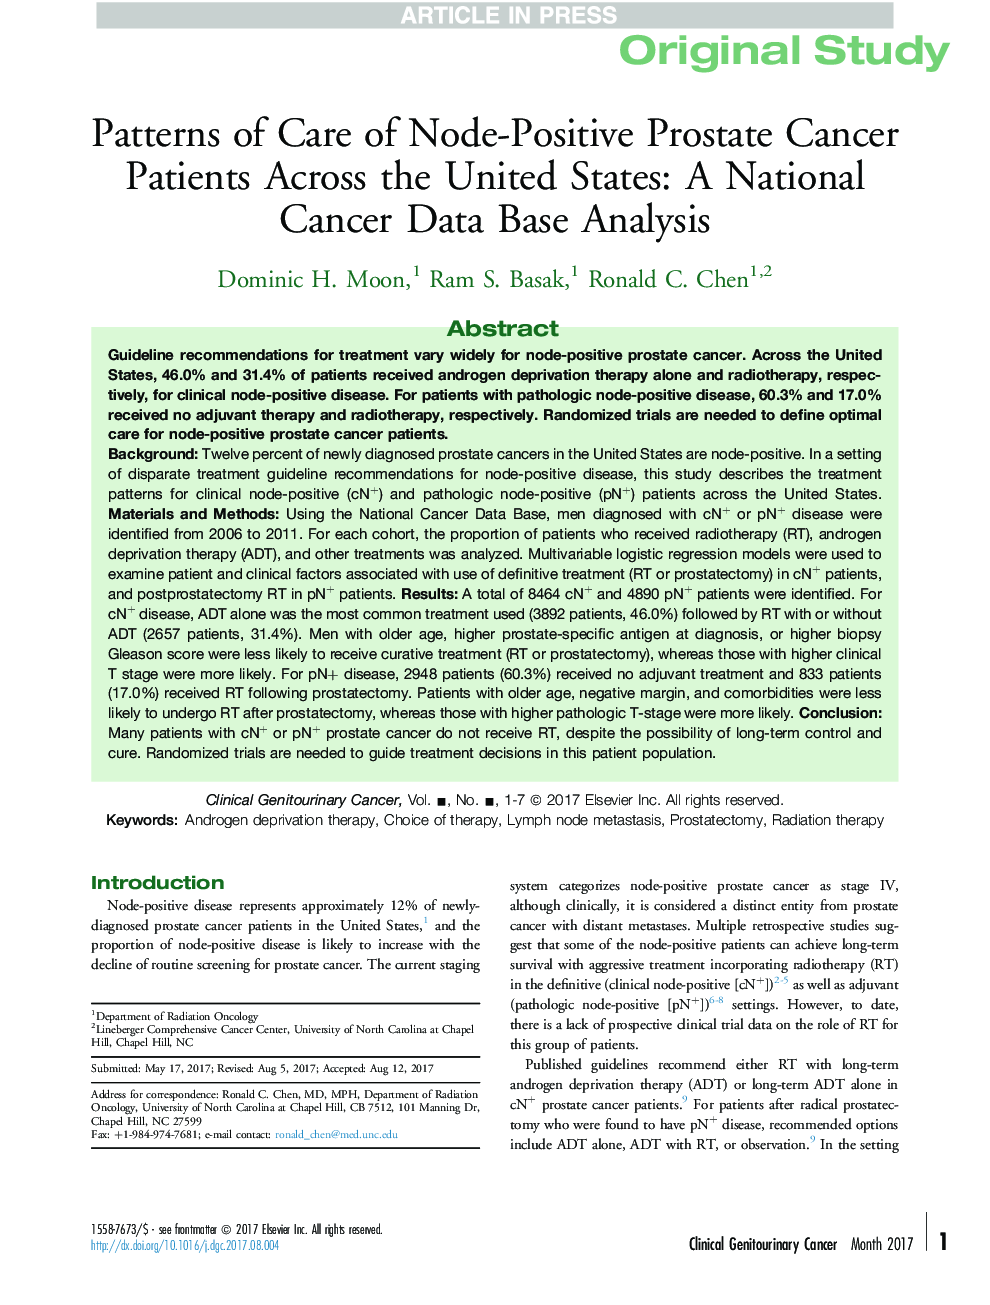 الگوهای مراقبت از بیماران مبتلا به سرطان پروستات مثبت در سراسر ایالات متحده: تجزیه و تحلیل پایگاه داده سرطان ملی 